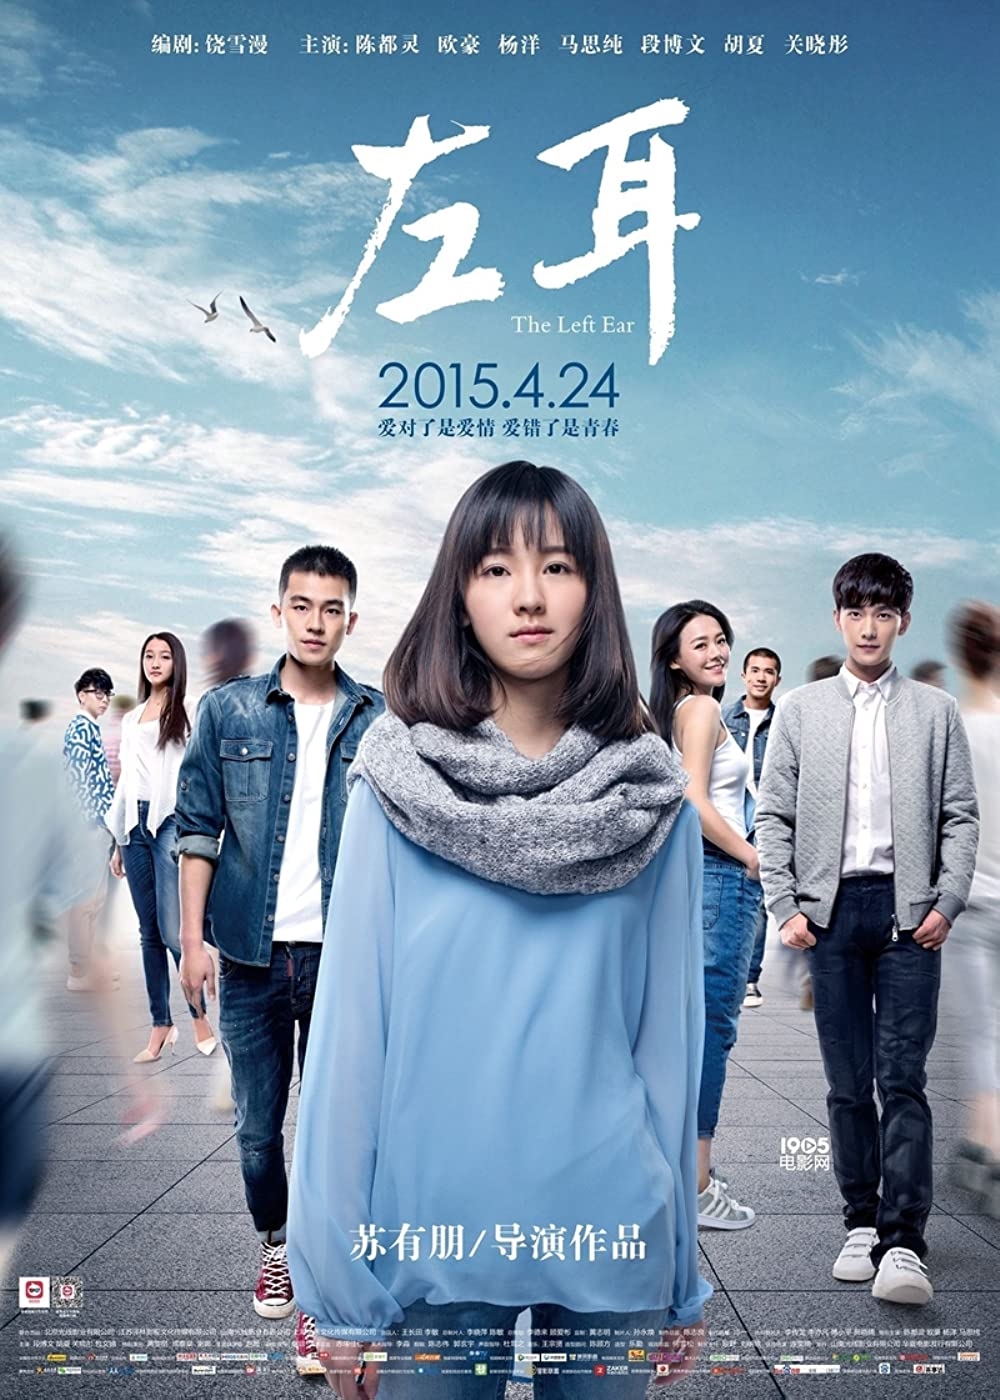 Nhan sắc không tì vết của Trần Đô Linh khi chưa qua chỉnh sửa trong buổi ra mắt phim mới - Ảnh 2